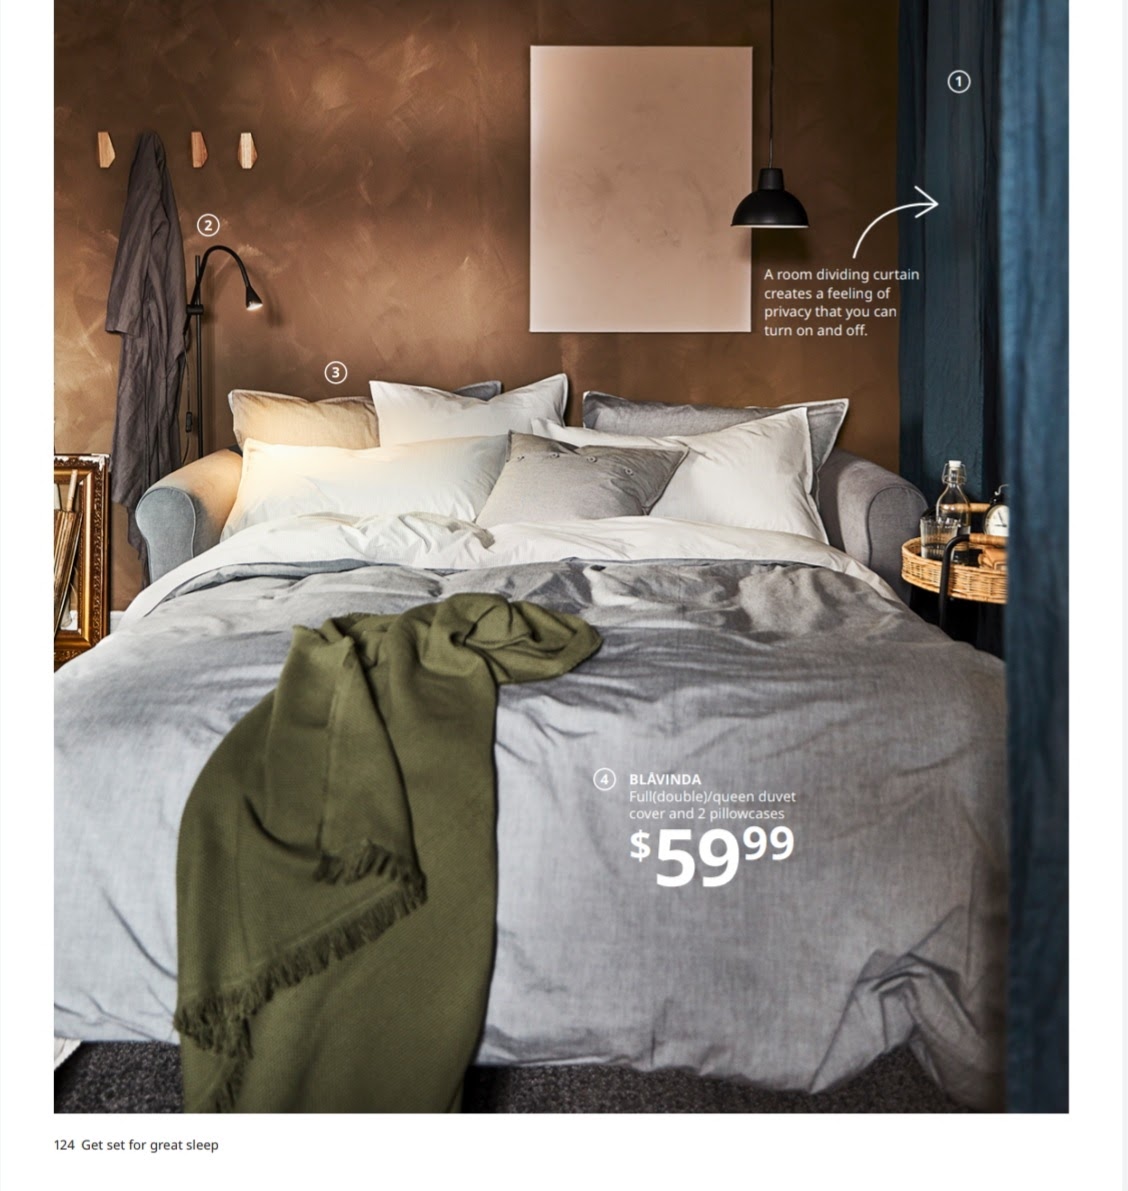 Ikea Bedding and Blavinda Duvet Cover